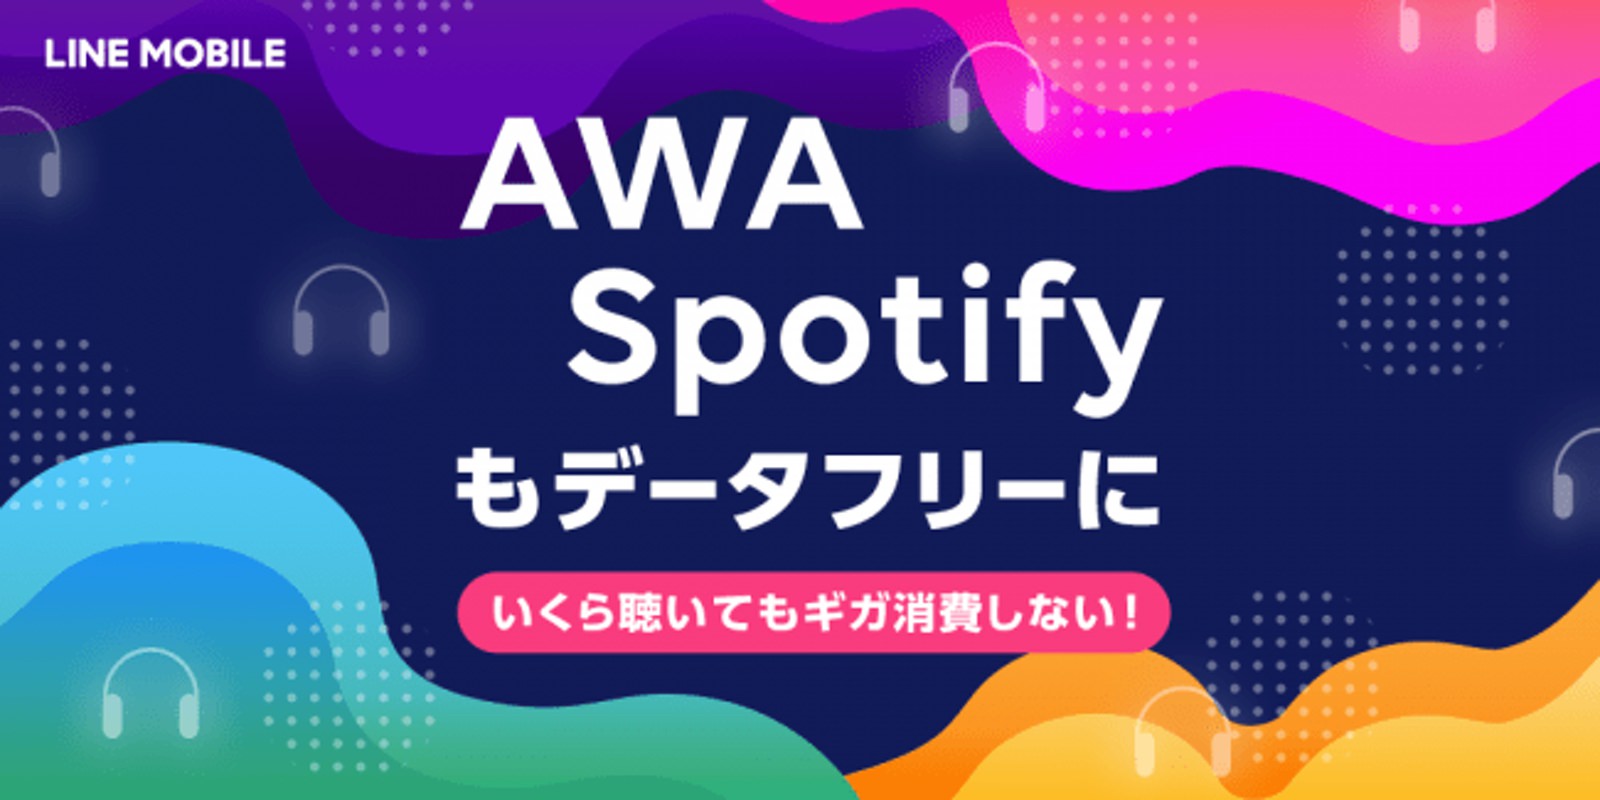 LINE mobile AWA Spotify